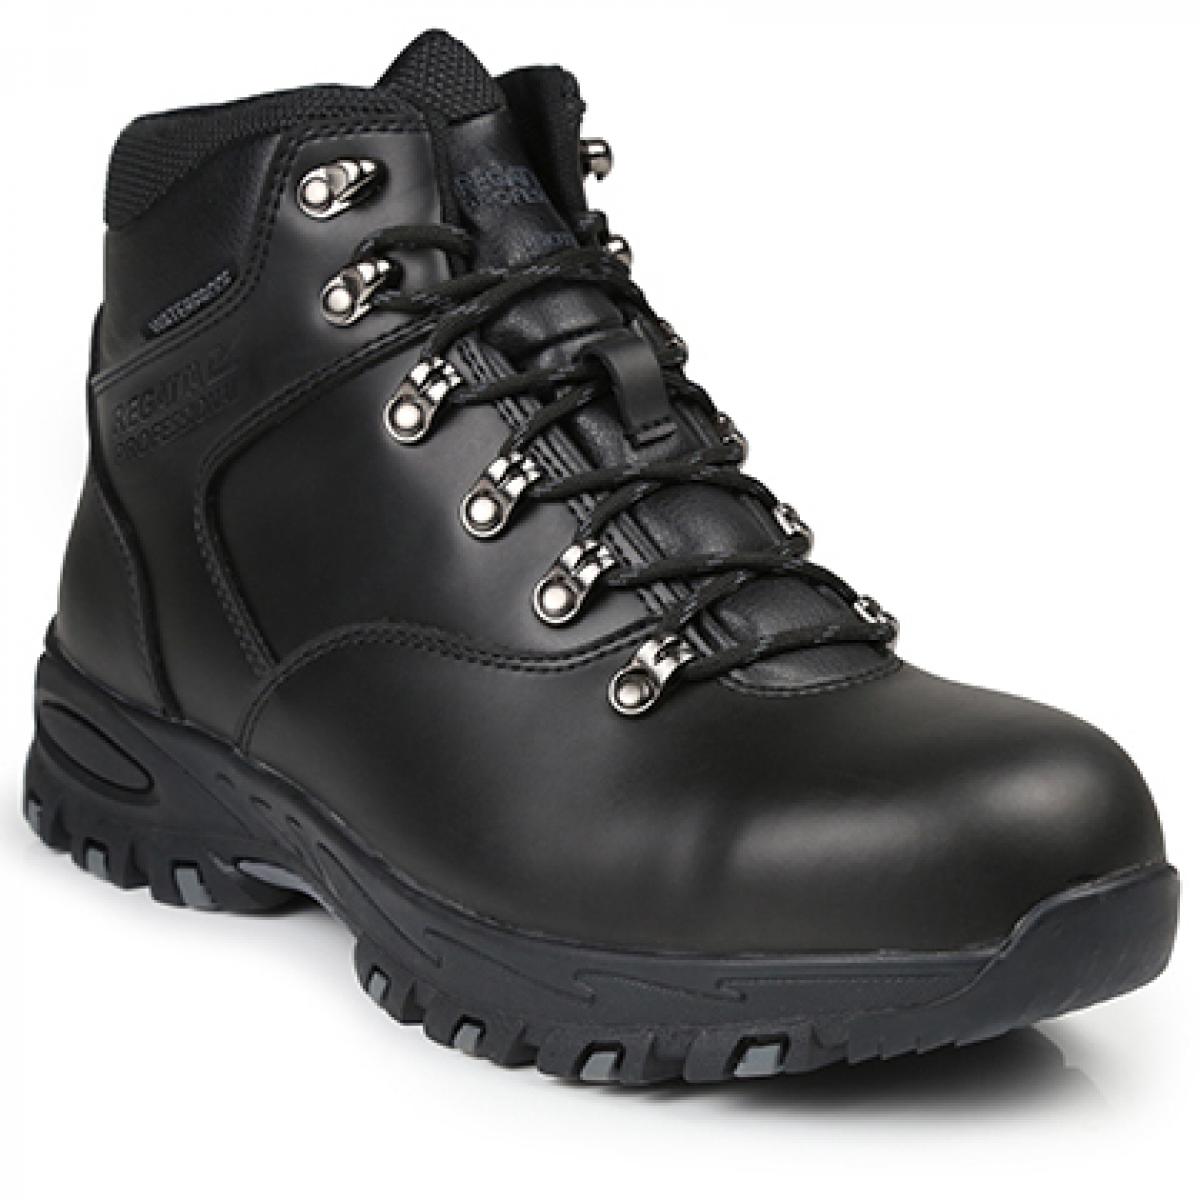 Hersteller: Regatta Safety Footwear Herstellernummer: TRK203 Artikelbezeichnung: Gritstone S3 Waterproof Safety Hiker - Sicherheitschuhe Farbe: Black